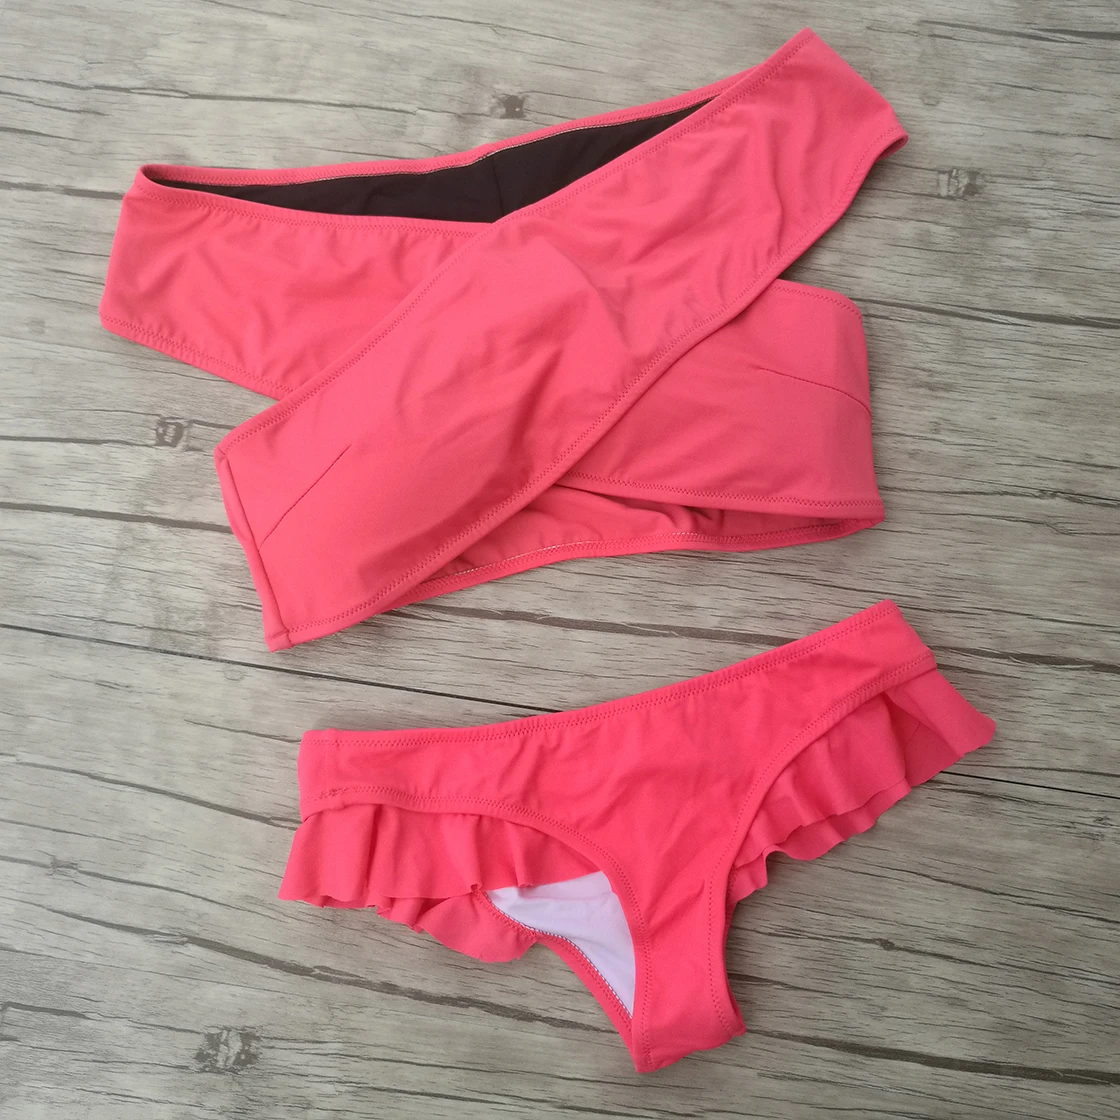 Sıcak! Yeni Kadın Bikini Setleri Kırmızı siyah Seksi Mayo Push Up Mayo Biquini Beachwear Seksi kız Yüksek Bel bikini 3